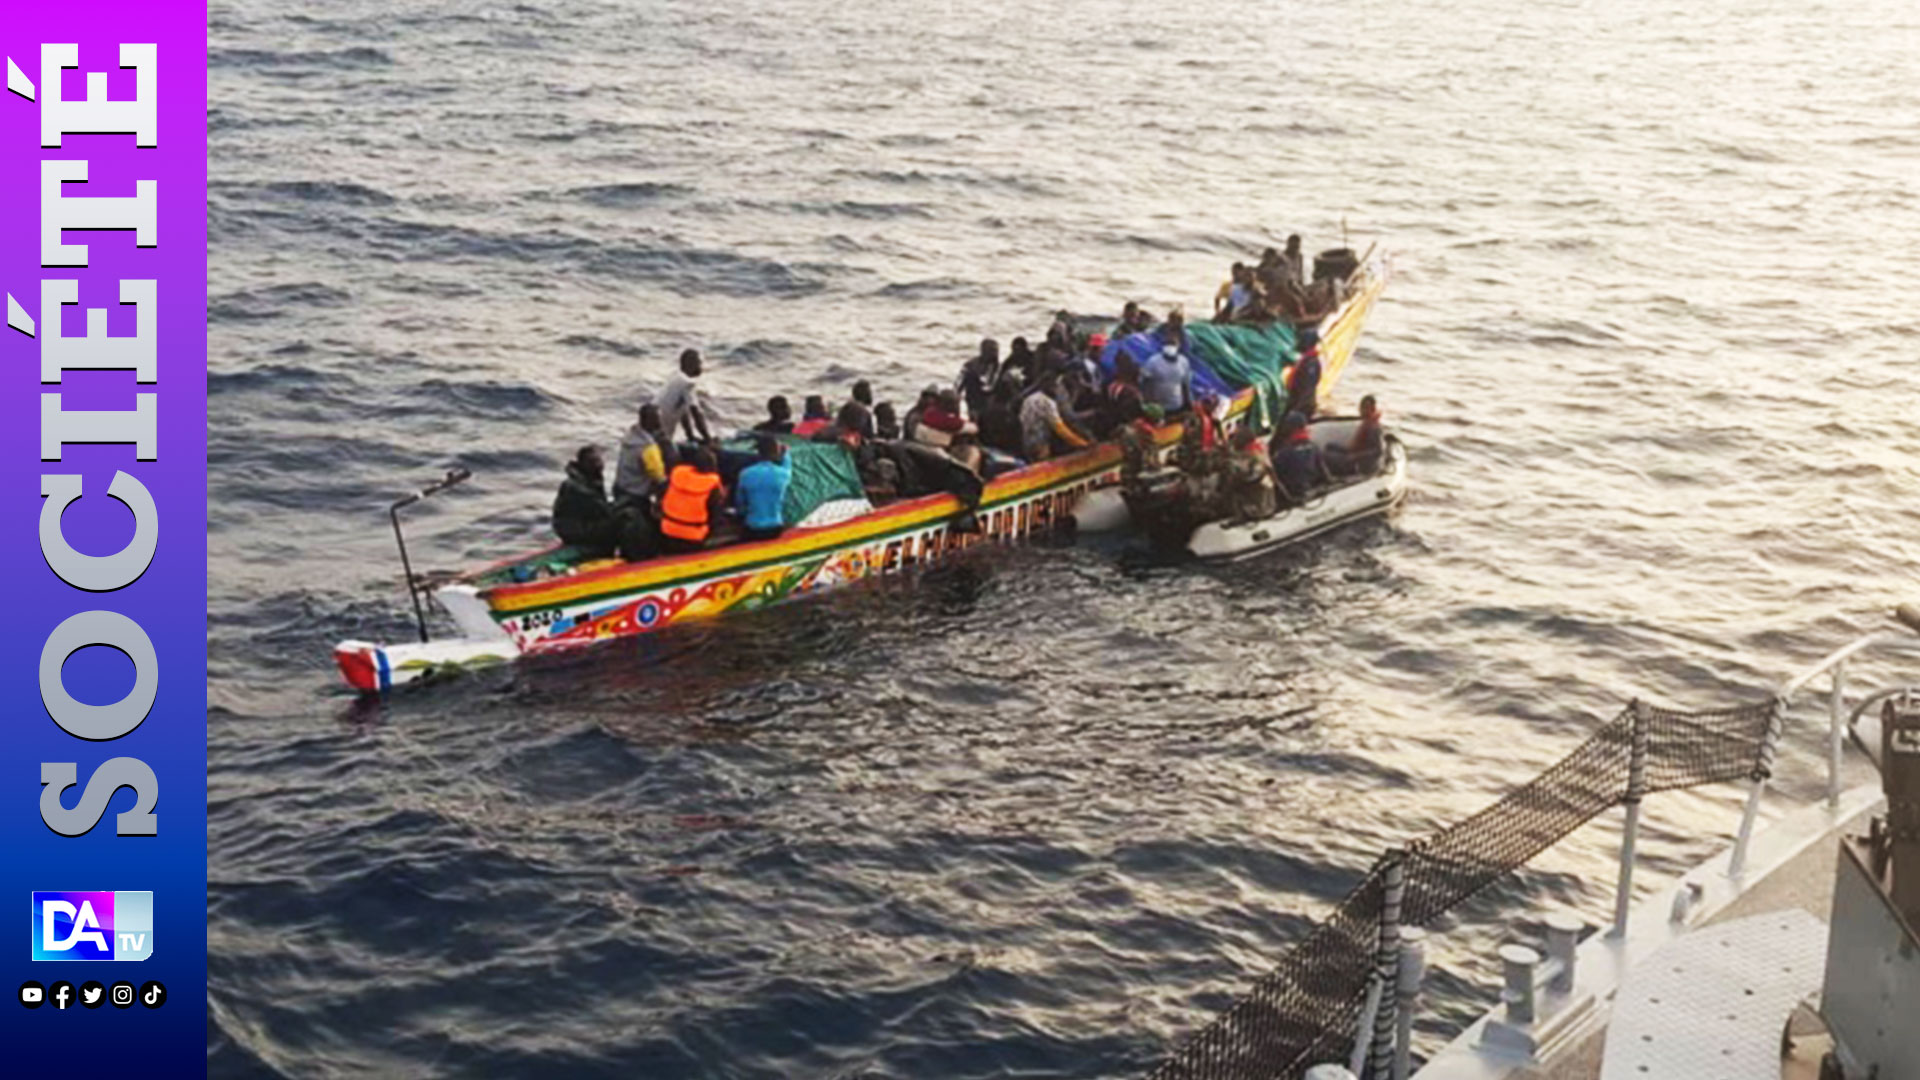 Émigration irrégulière : La marine intercepte deux pirogues sur le fleuve Sénégal